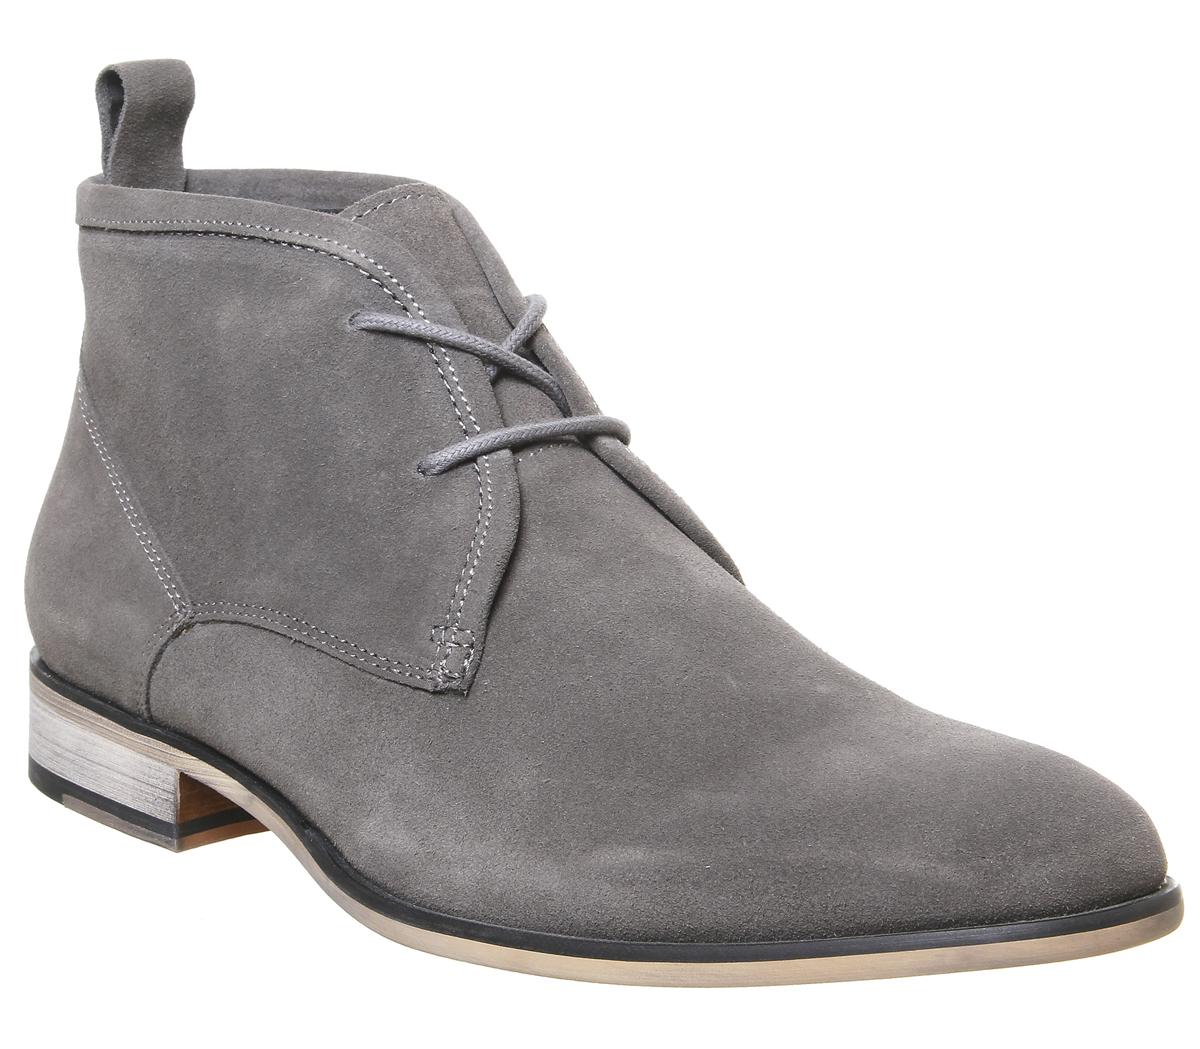 gray chukka boots